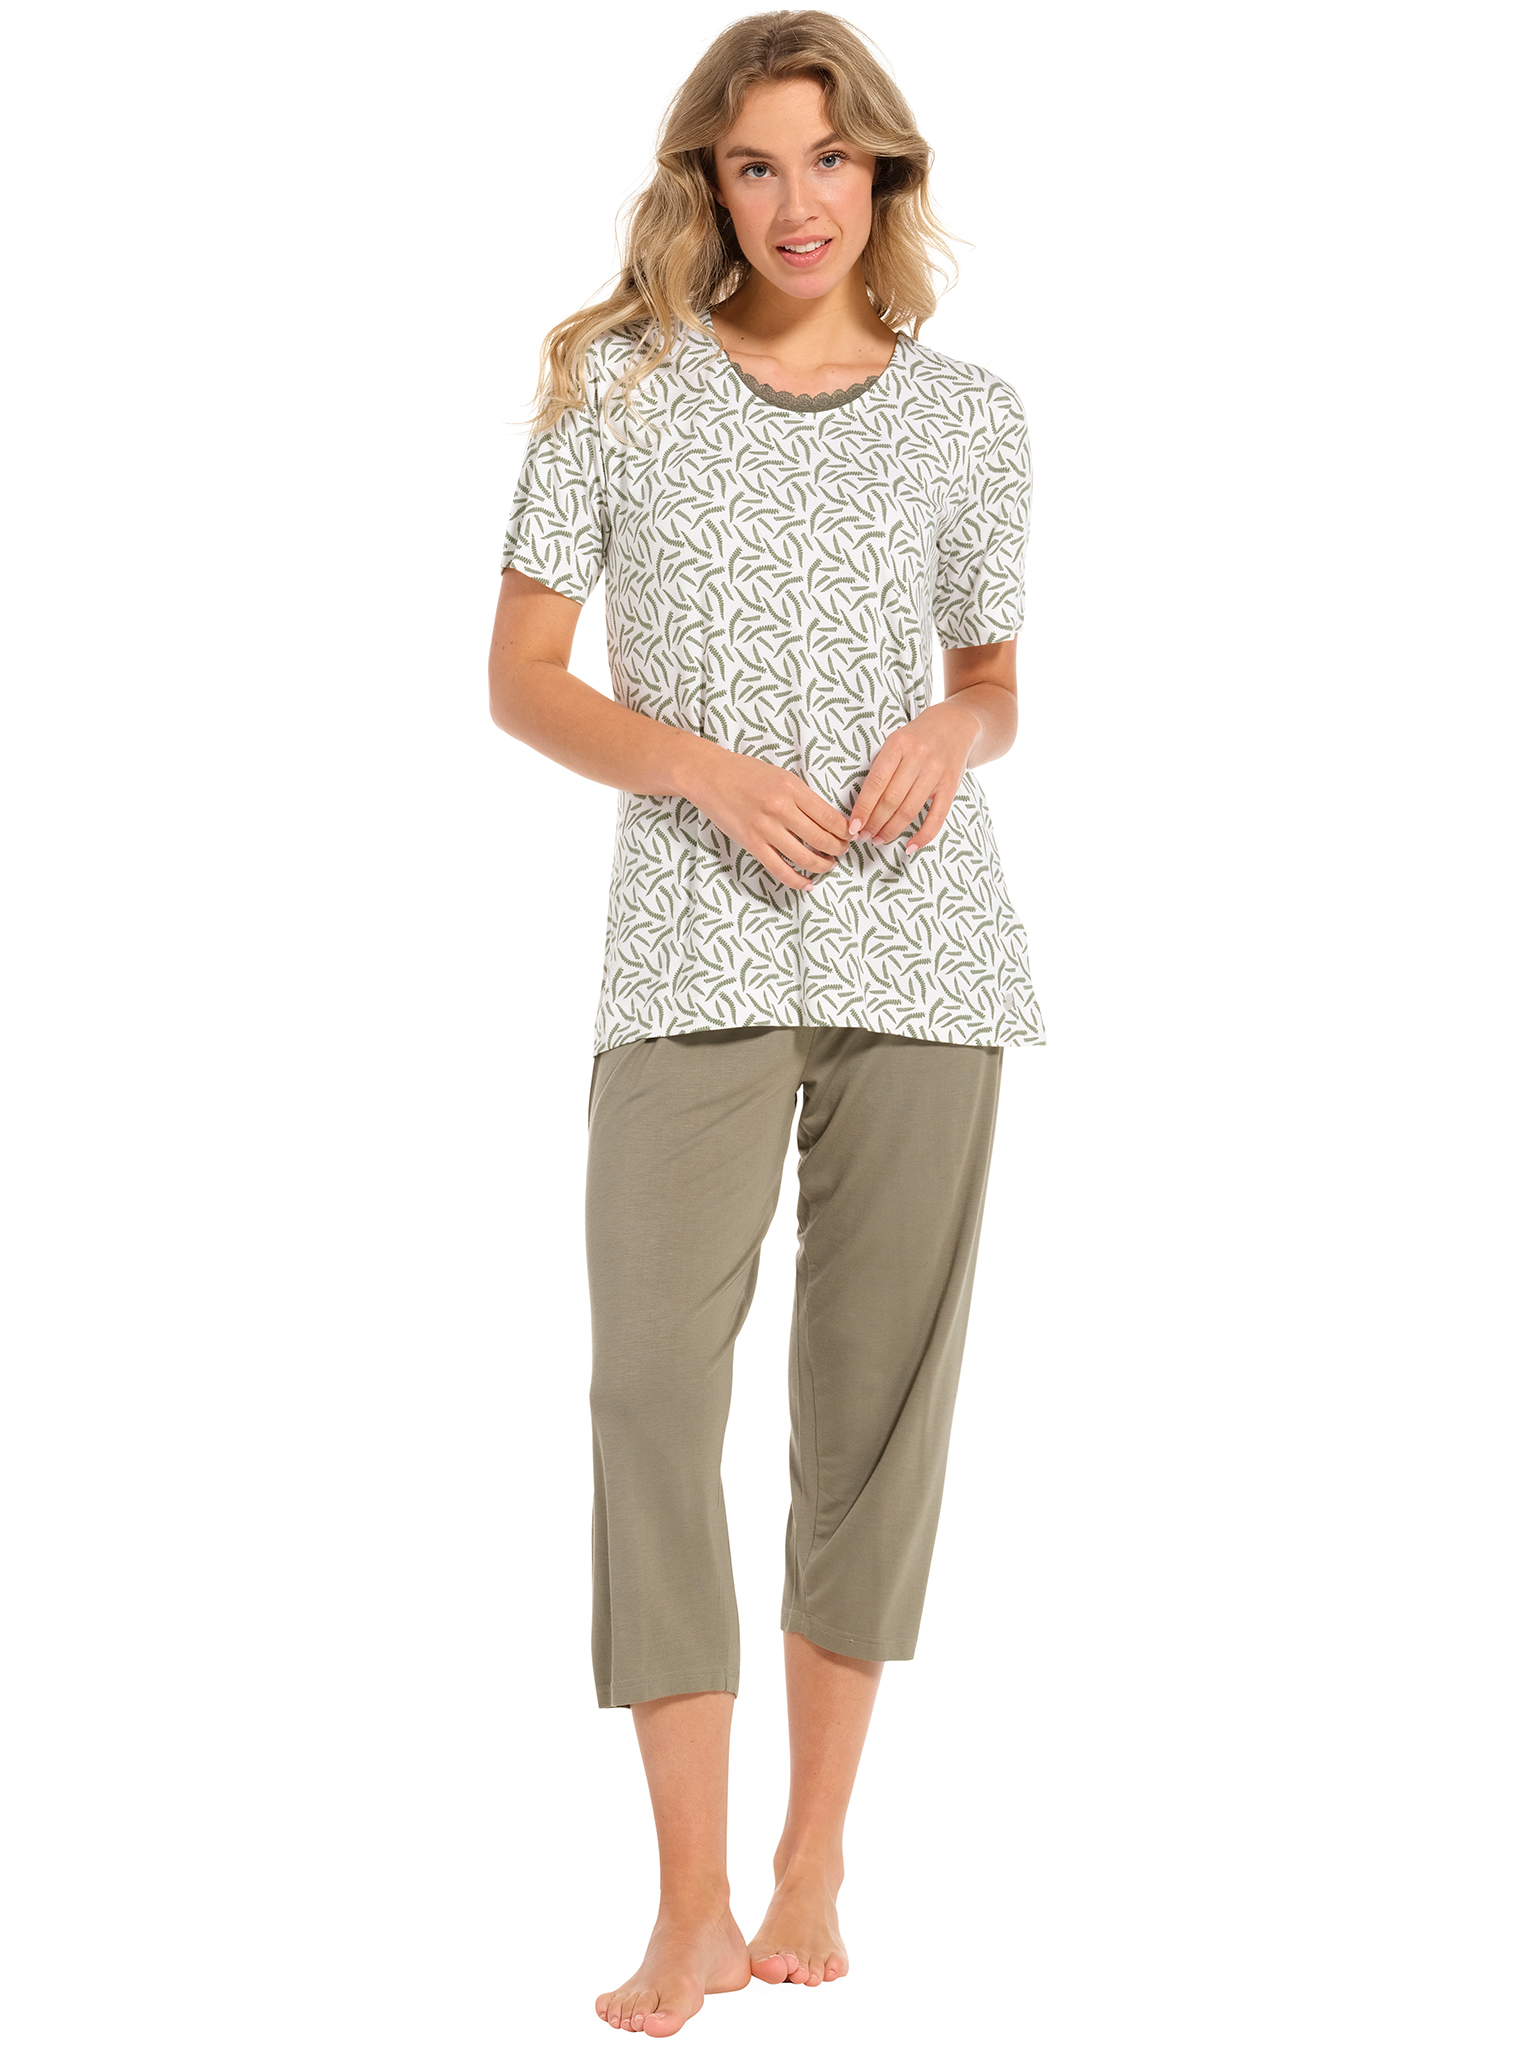 Pastunette pyjama dames - wit/donkergroen met print - 20241-148-2/720 - maat 44